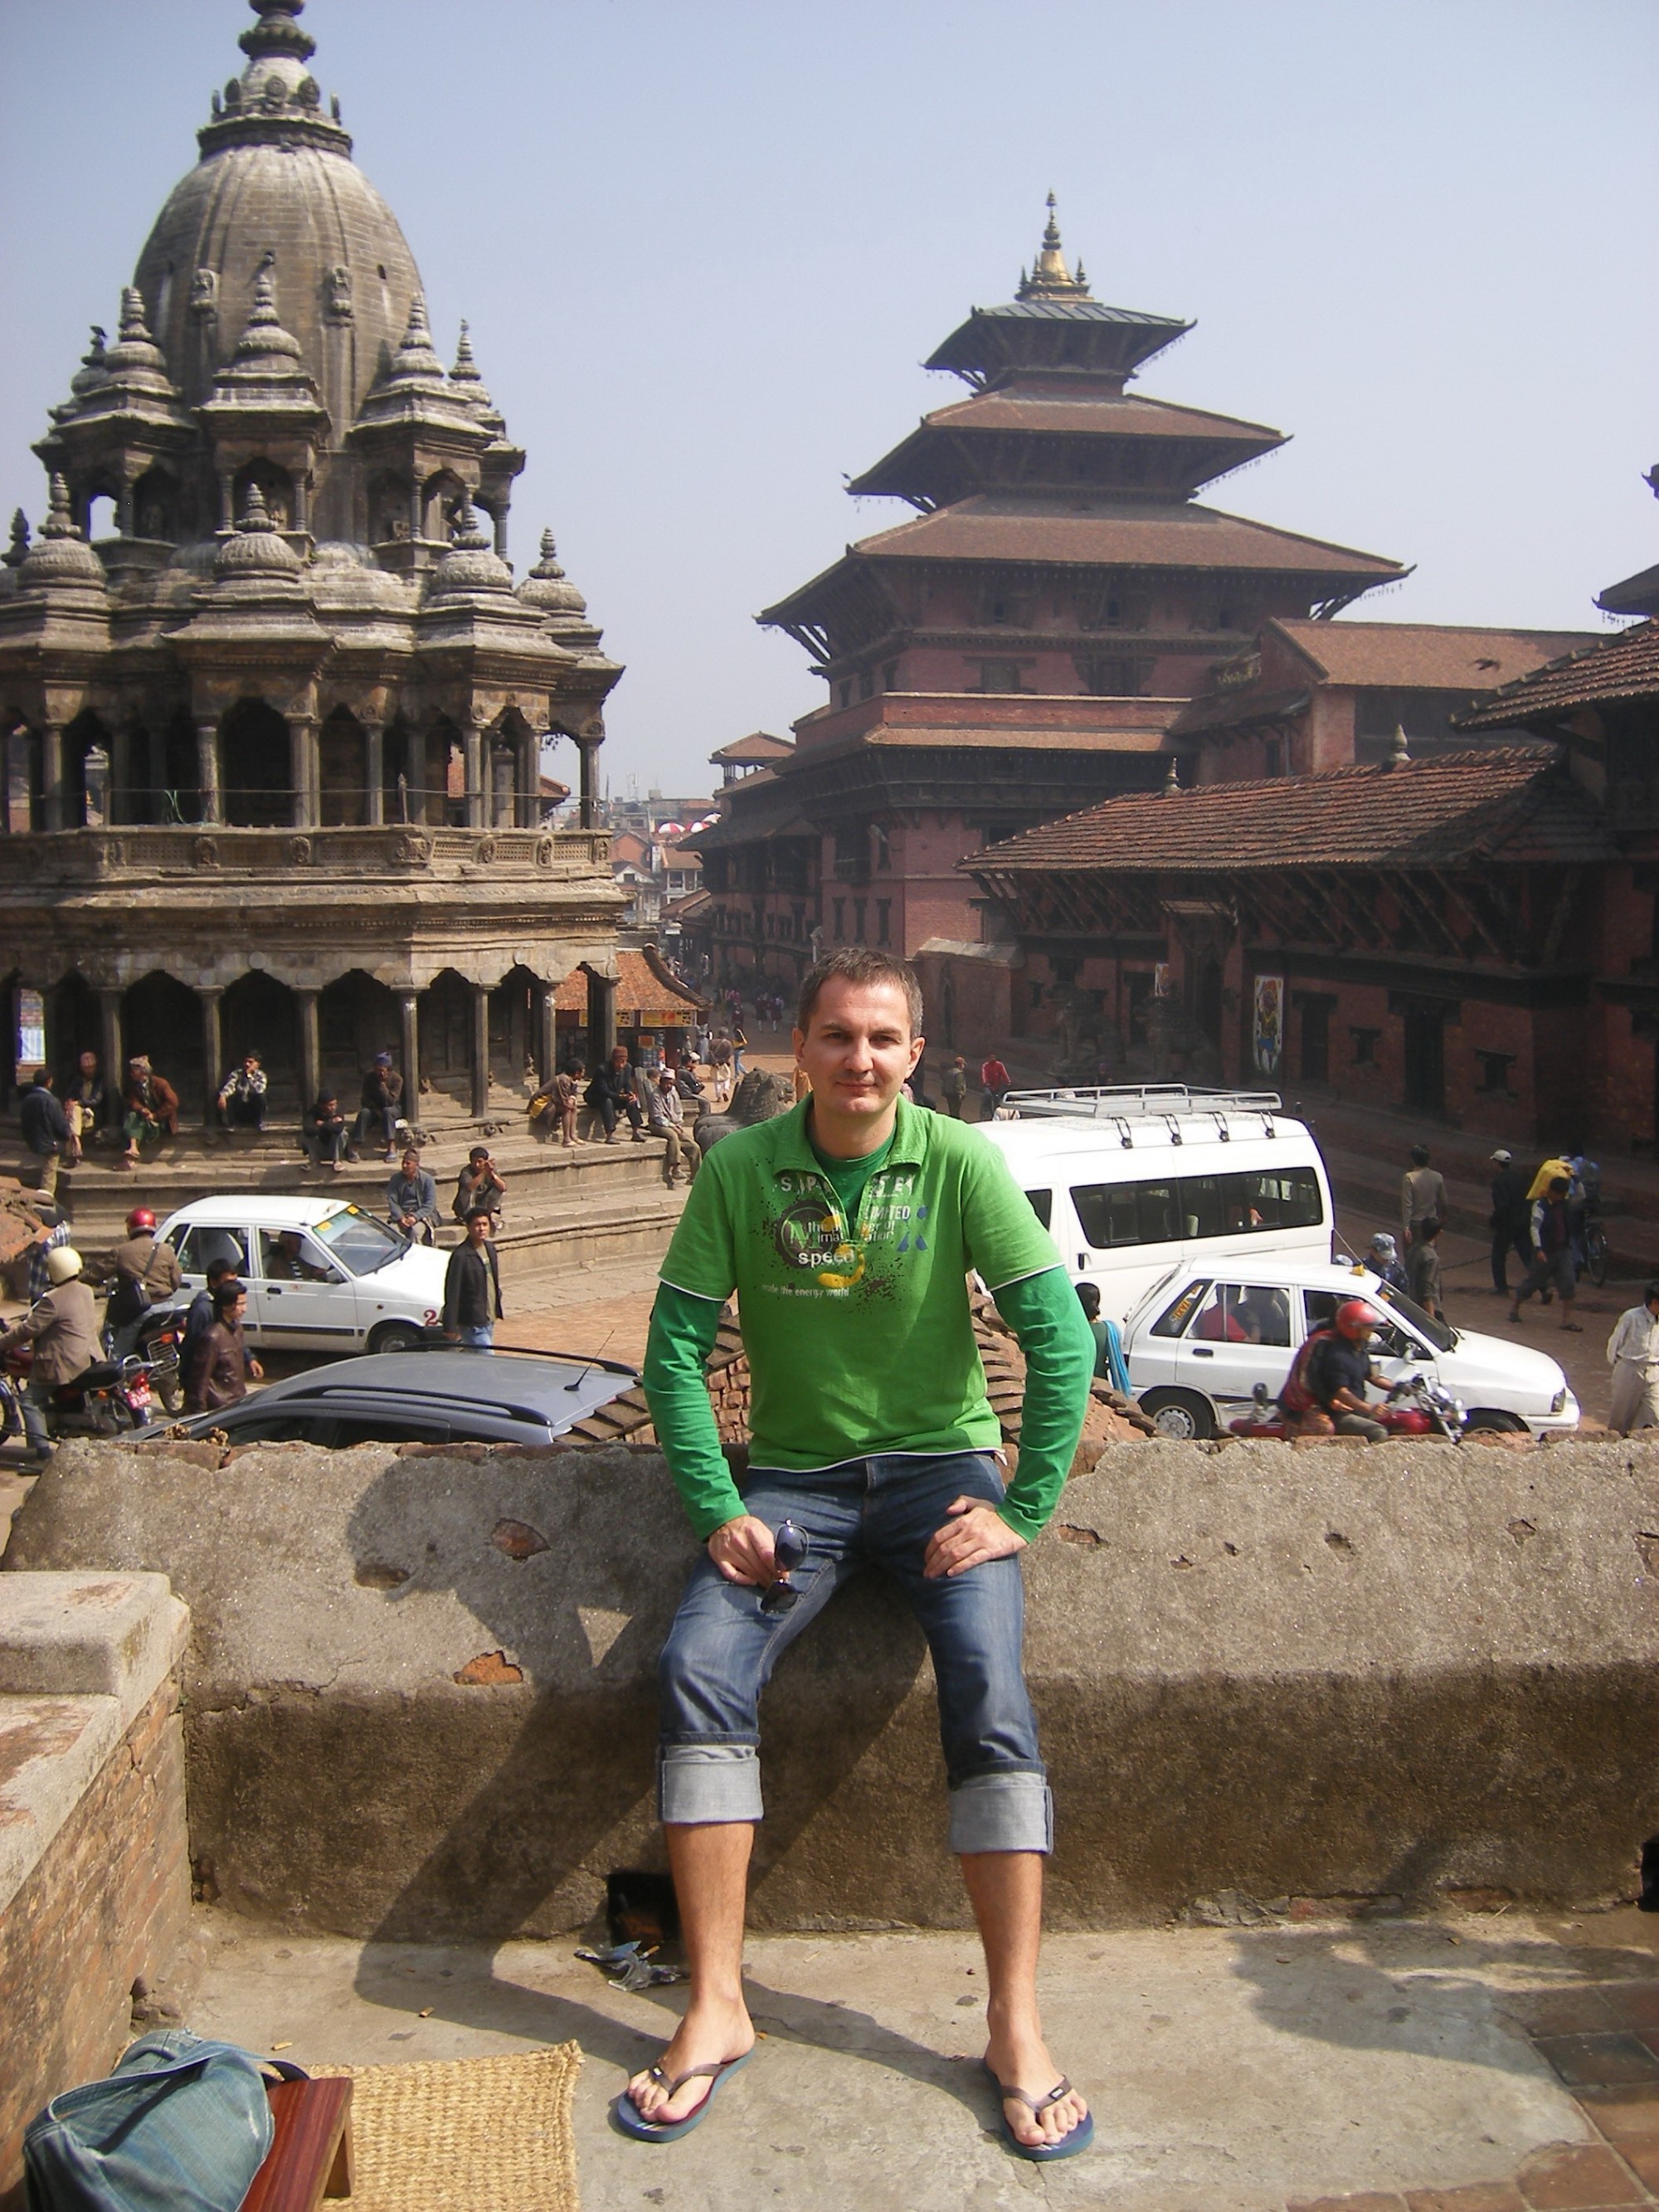 НЕПАЛ, Катманду, 19 марта 2008